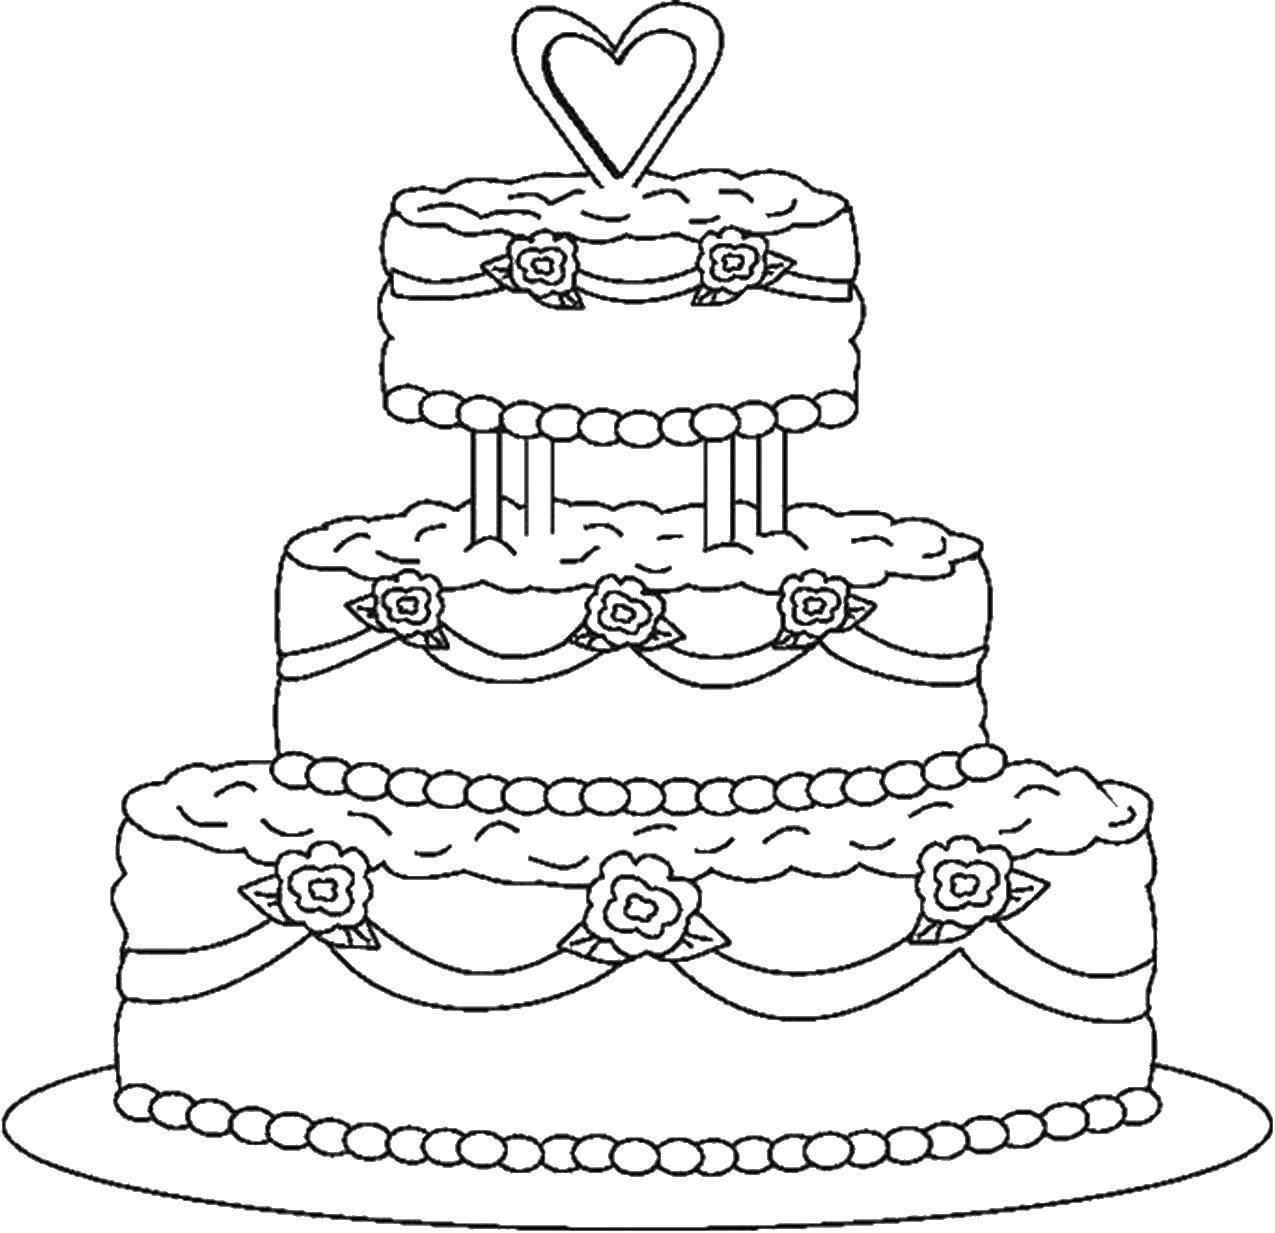 Розмальовки  Весілля і тортик. Завантажити розмальовку Торт, їжа, свято.  Роздрукувати ,торти,